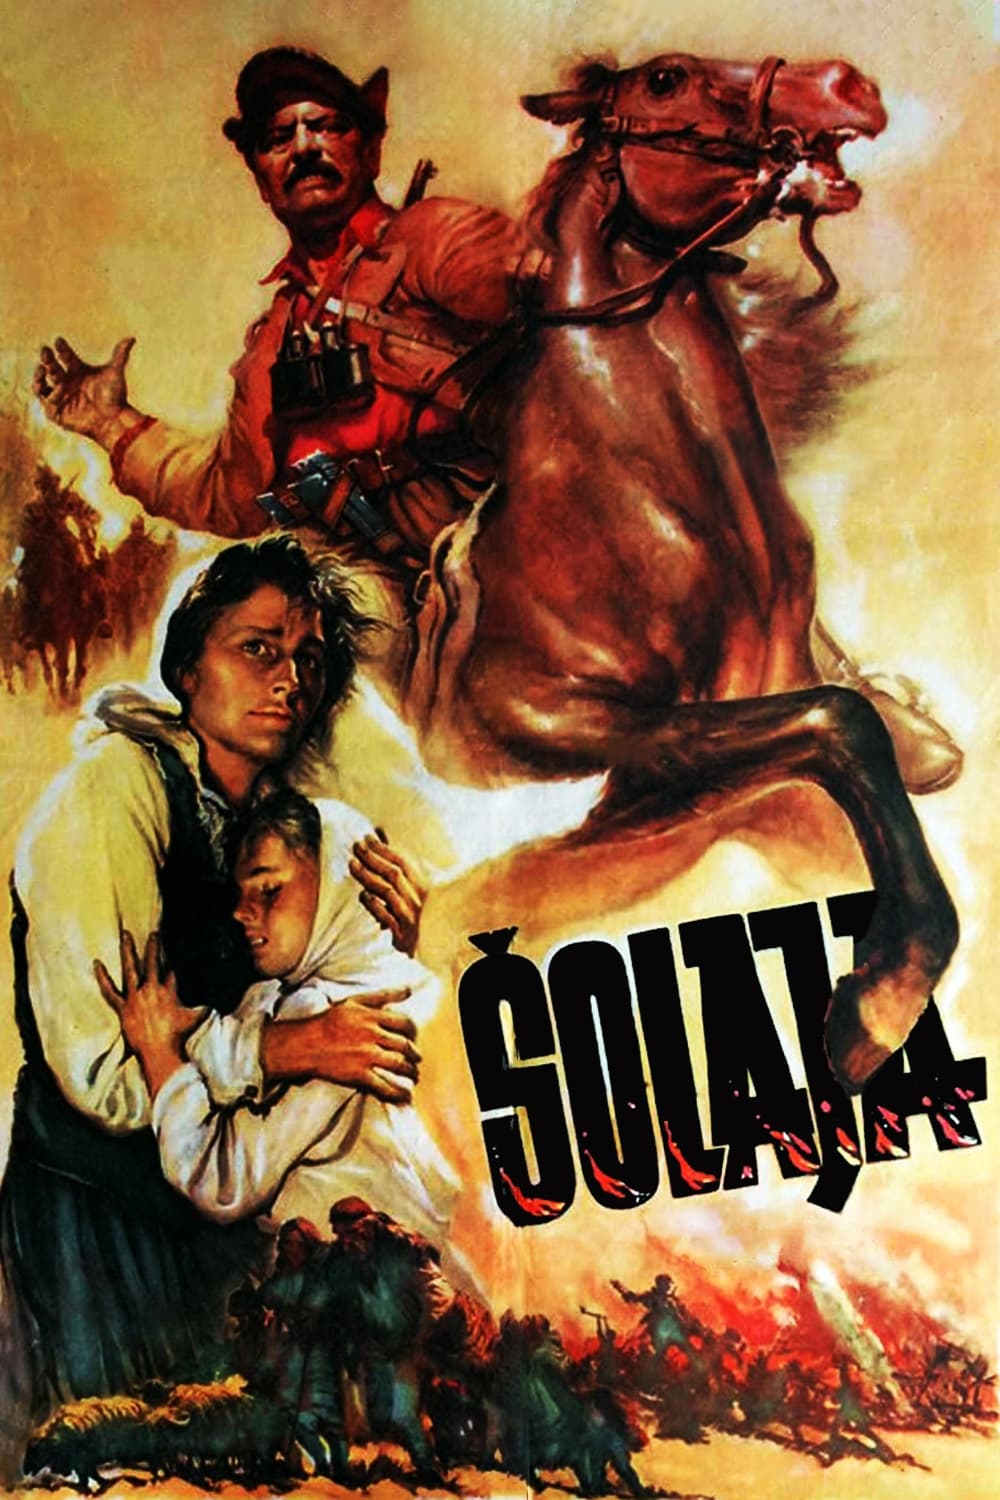 Solaja (1955)